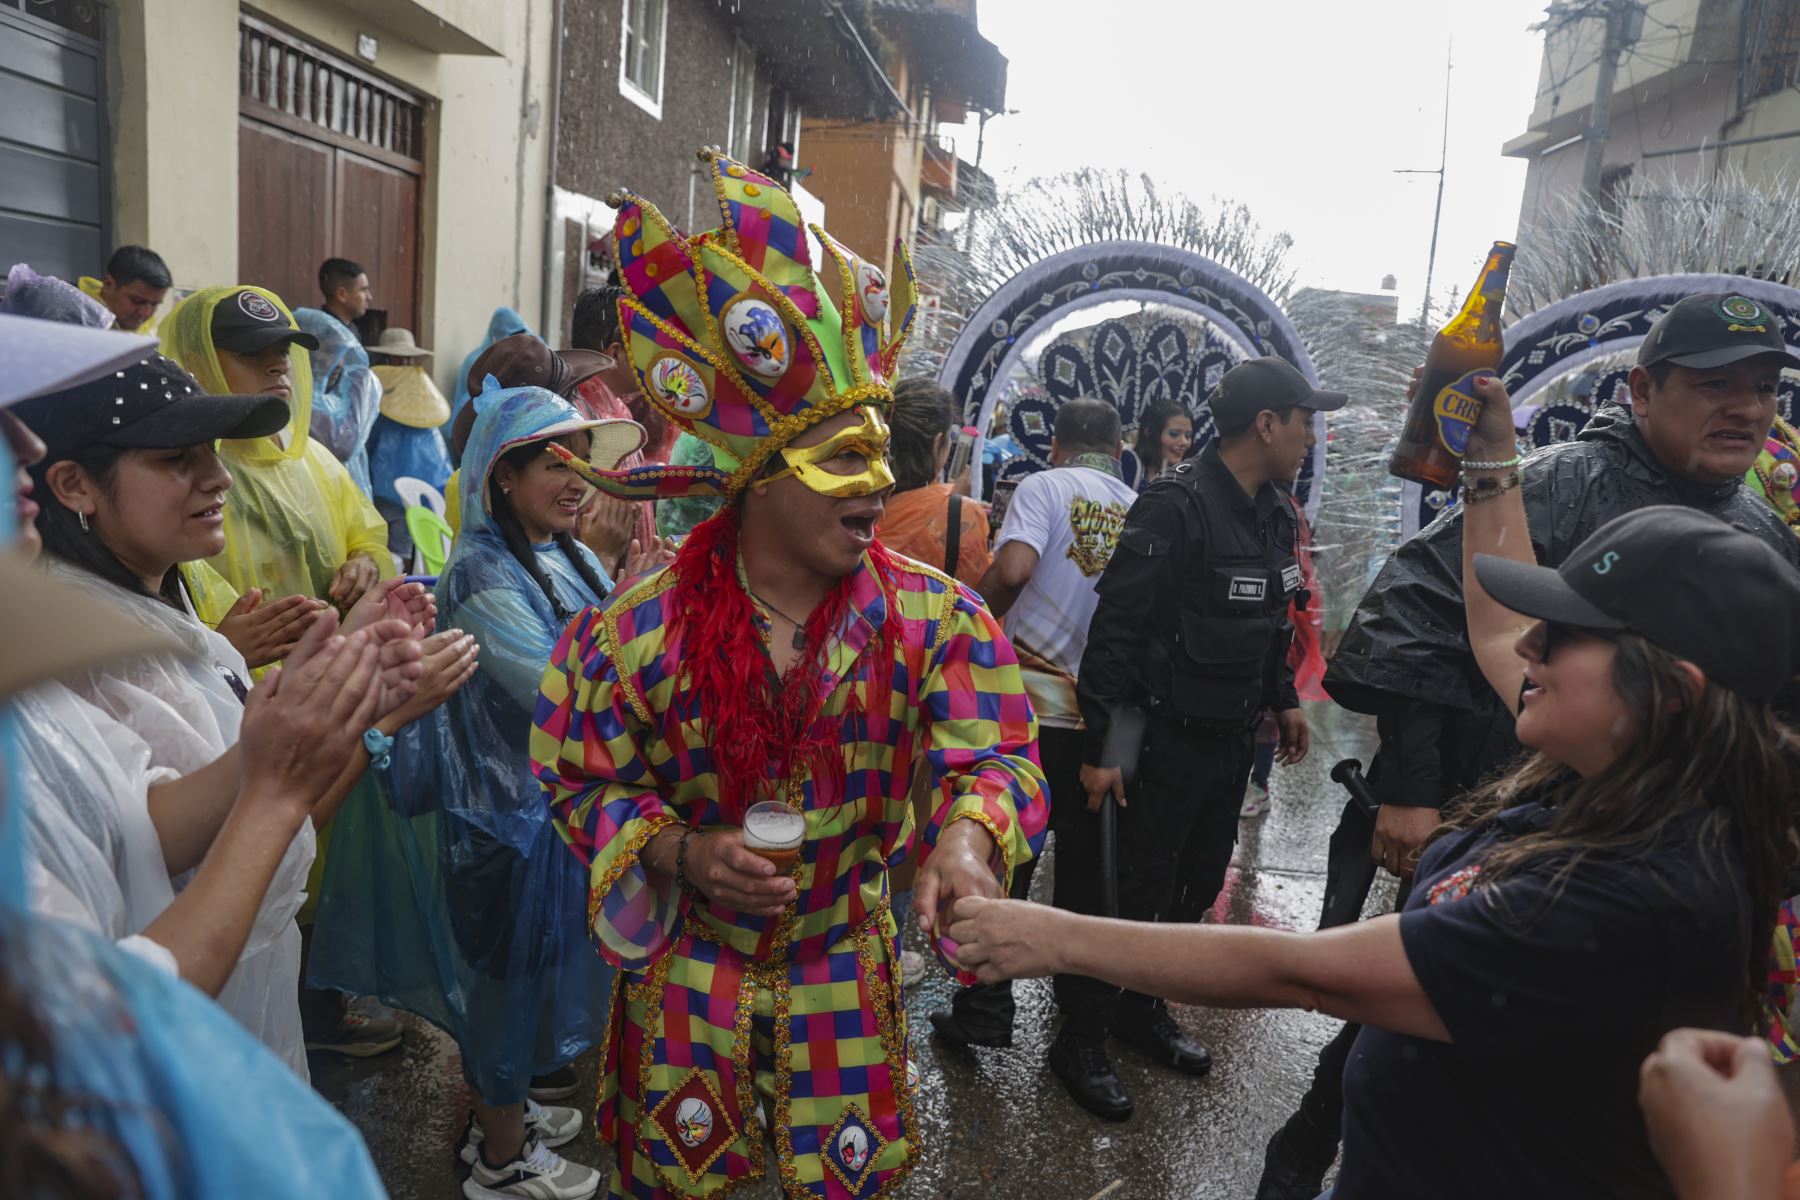 La magia del Carnaval se hizo presente una vez más en las calles de Cajamarca con el vibrante "Concurso de Patrullas y Comparsas", un espectáculo lleno de color, música y tradición que cautivó a los presentes y que ni la lluvia pudo parar.
Foto: ANDINA/Andrés Valle